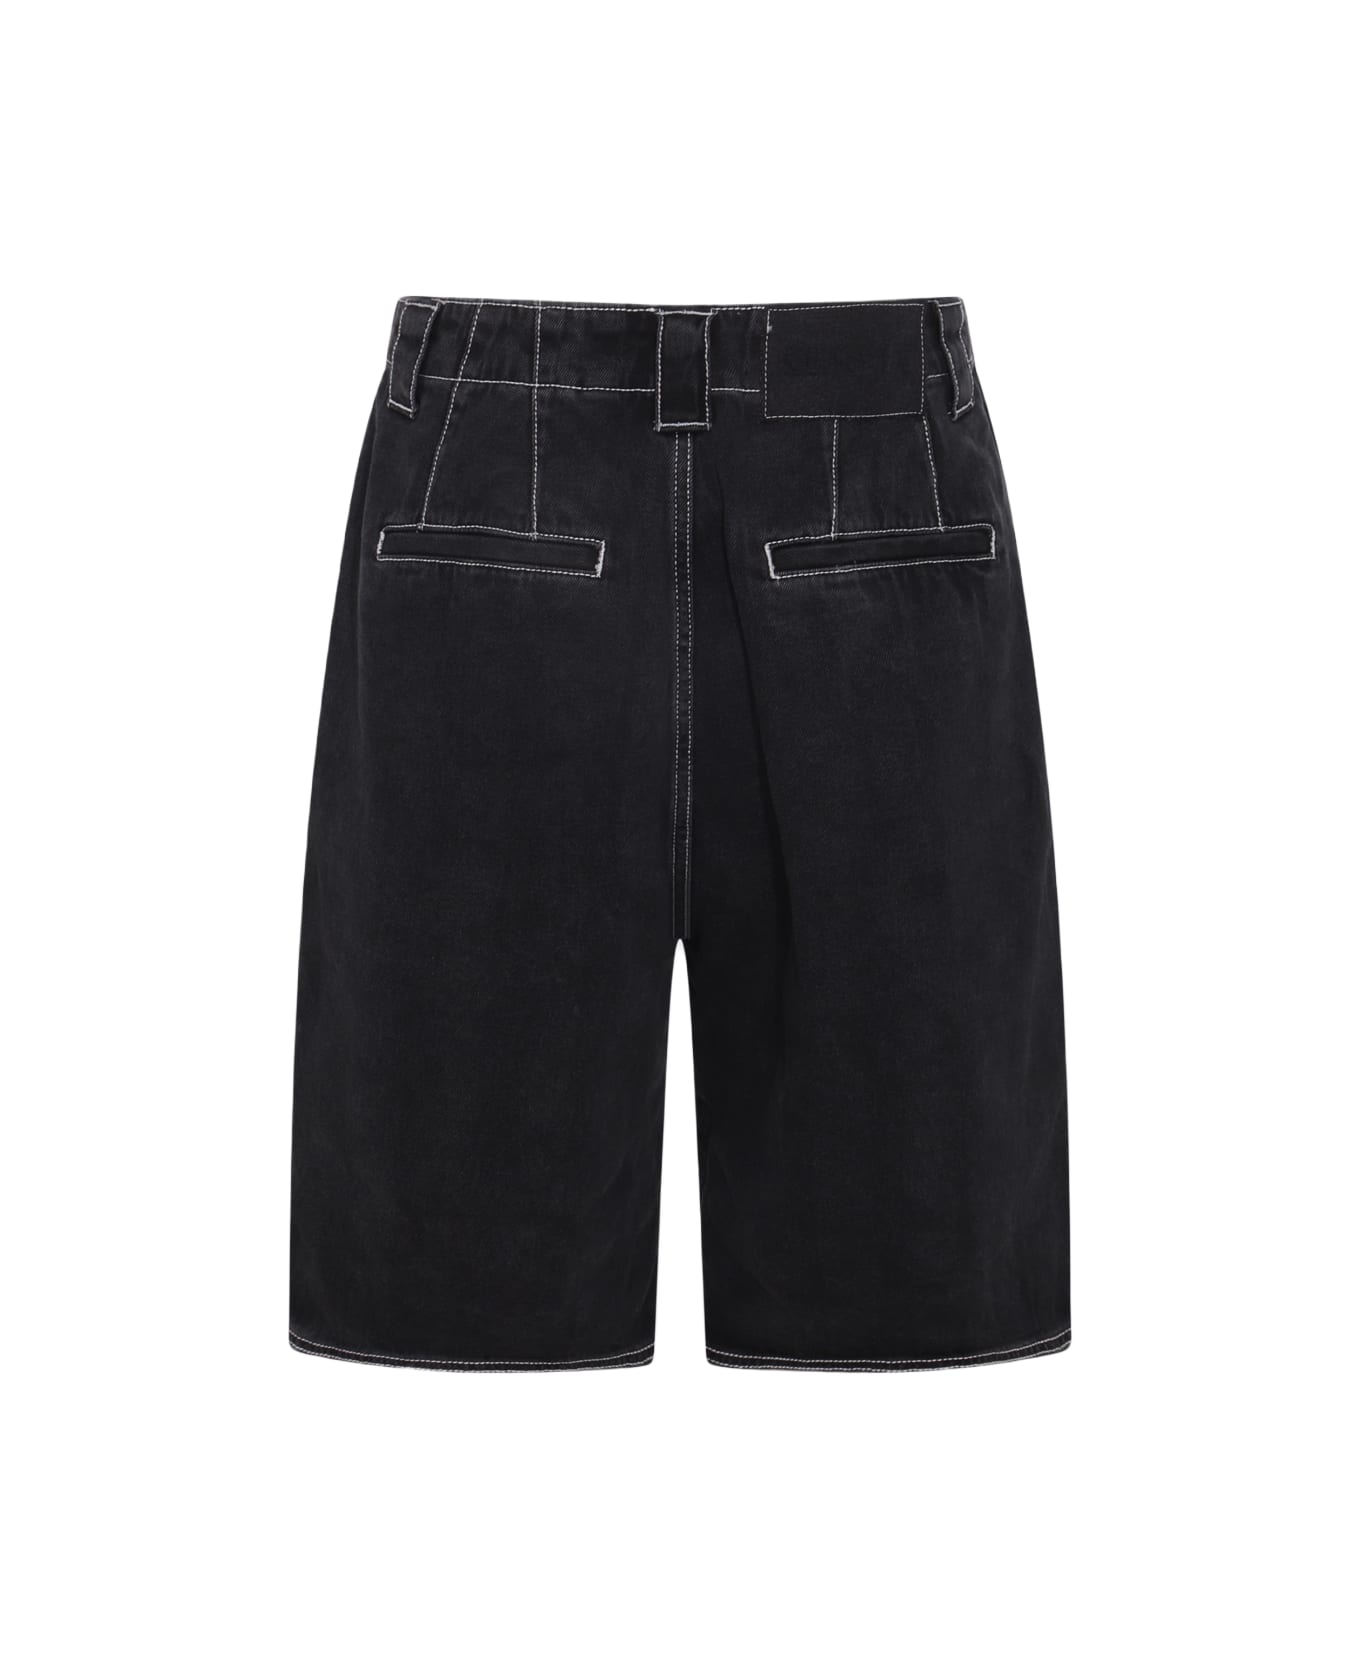 Sunnei Washed Black Denim Shorts - WASHED BLACK DENIM ショートパンツ